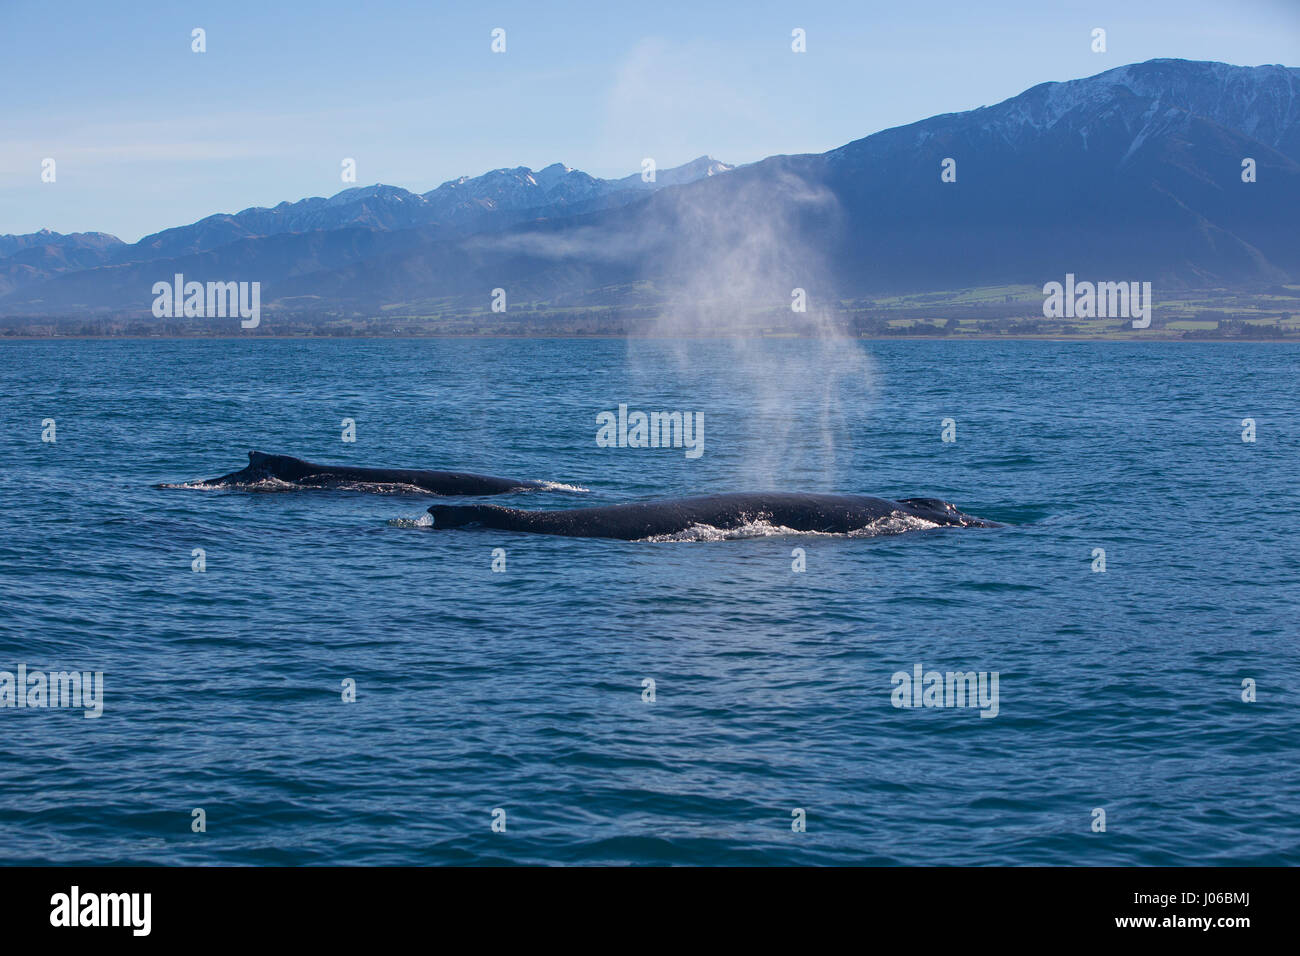 KAIKOURA Halbinsel, Neuseeland: die Buckelwale führen eine Reihe von Tricks für Zuschauer. ATEMBERAUBENDE Aufnahmen von frechen Delfine mit zwei 40-Fuß lange Buckelwale wurden gefangen genommen. Die herrlichen Bilder zeigen des super Pod von mehr als-hundert-und-fünfzig dusky Delphine unterbrechen die beiden Wale, wie sie ihren Weg zu den wärmeren Gewässern zu züchten gemacht. Die Bilder zeigen die Delphine setzen auf eine Leistung für eine Gruppe von fassungslos Touristen auf eine Whale-watching Ausflug mit dem Boot. Nicht um die sportliche Delphine heraus erfolgen, durchgeführt die Buckelwale eine Reihe von synchronisierten twi Stockfoto